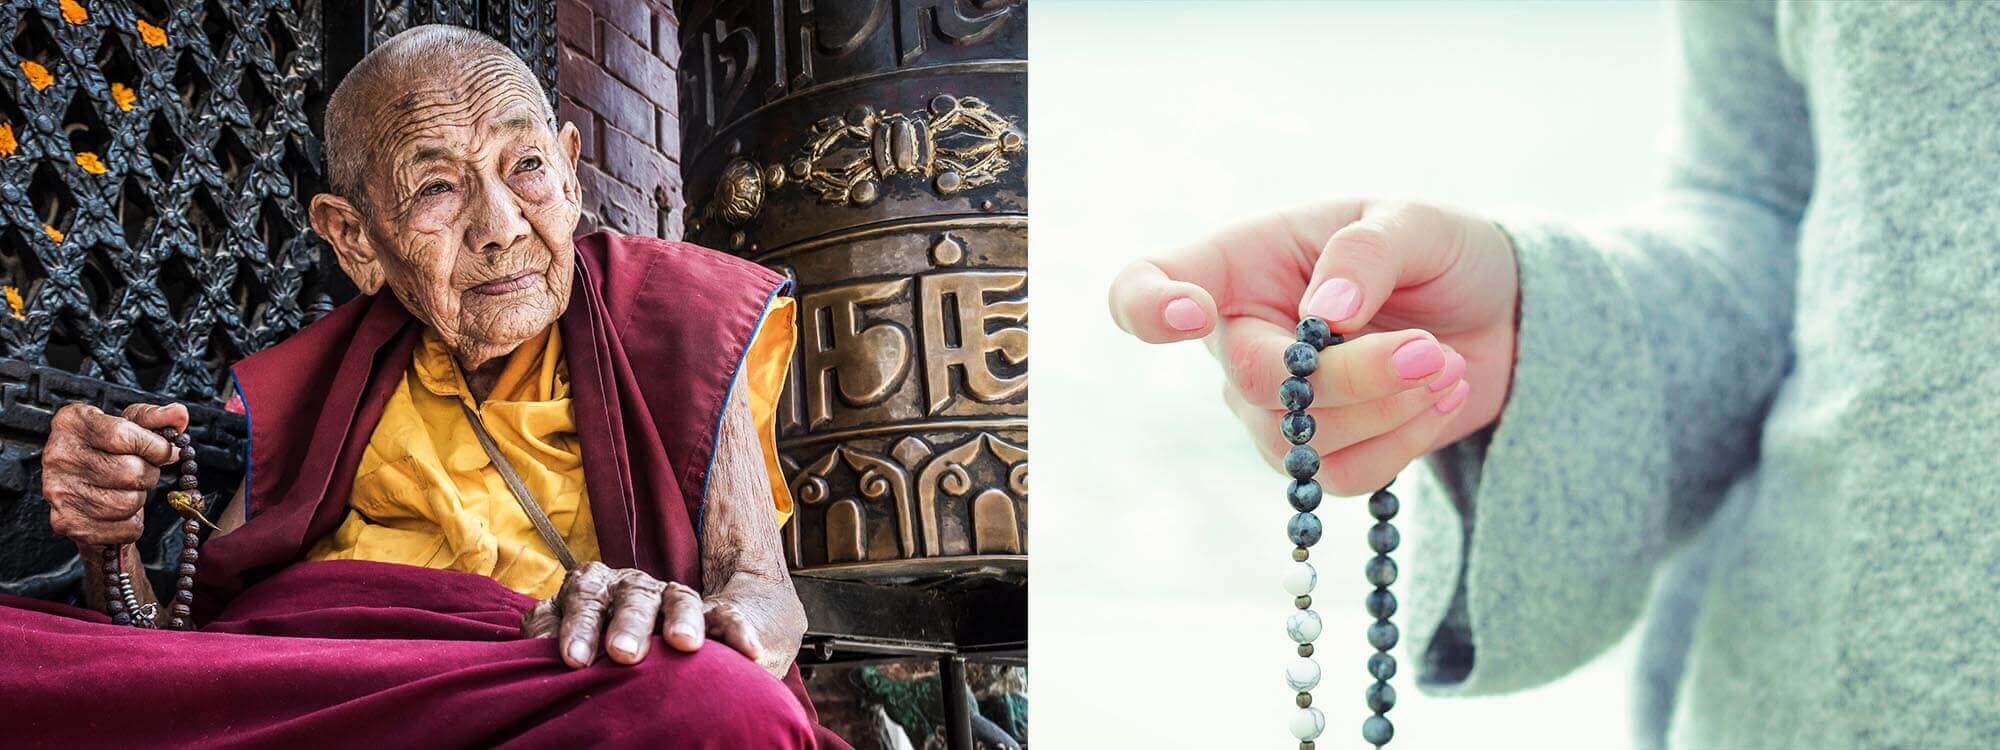 Chapelet bouddhiste : un objet spirituel et accessoire de mode